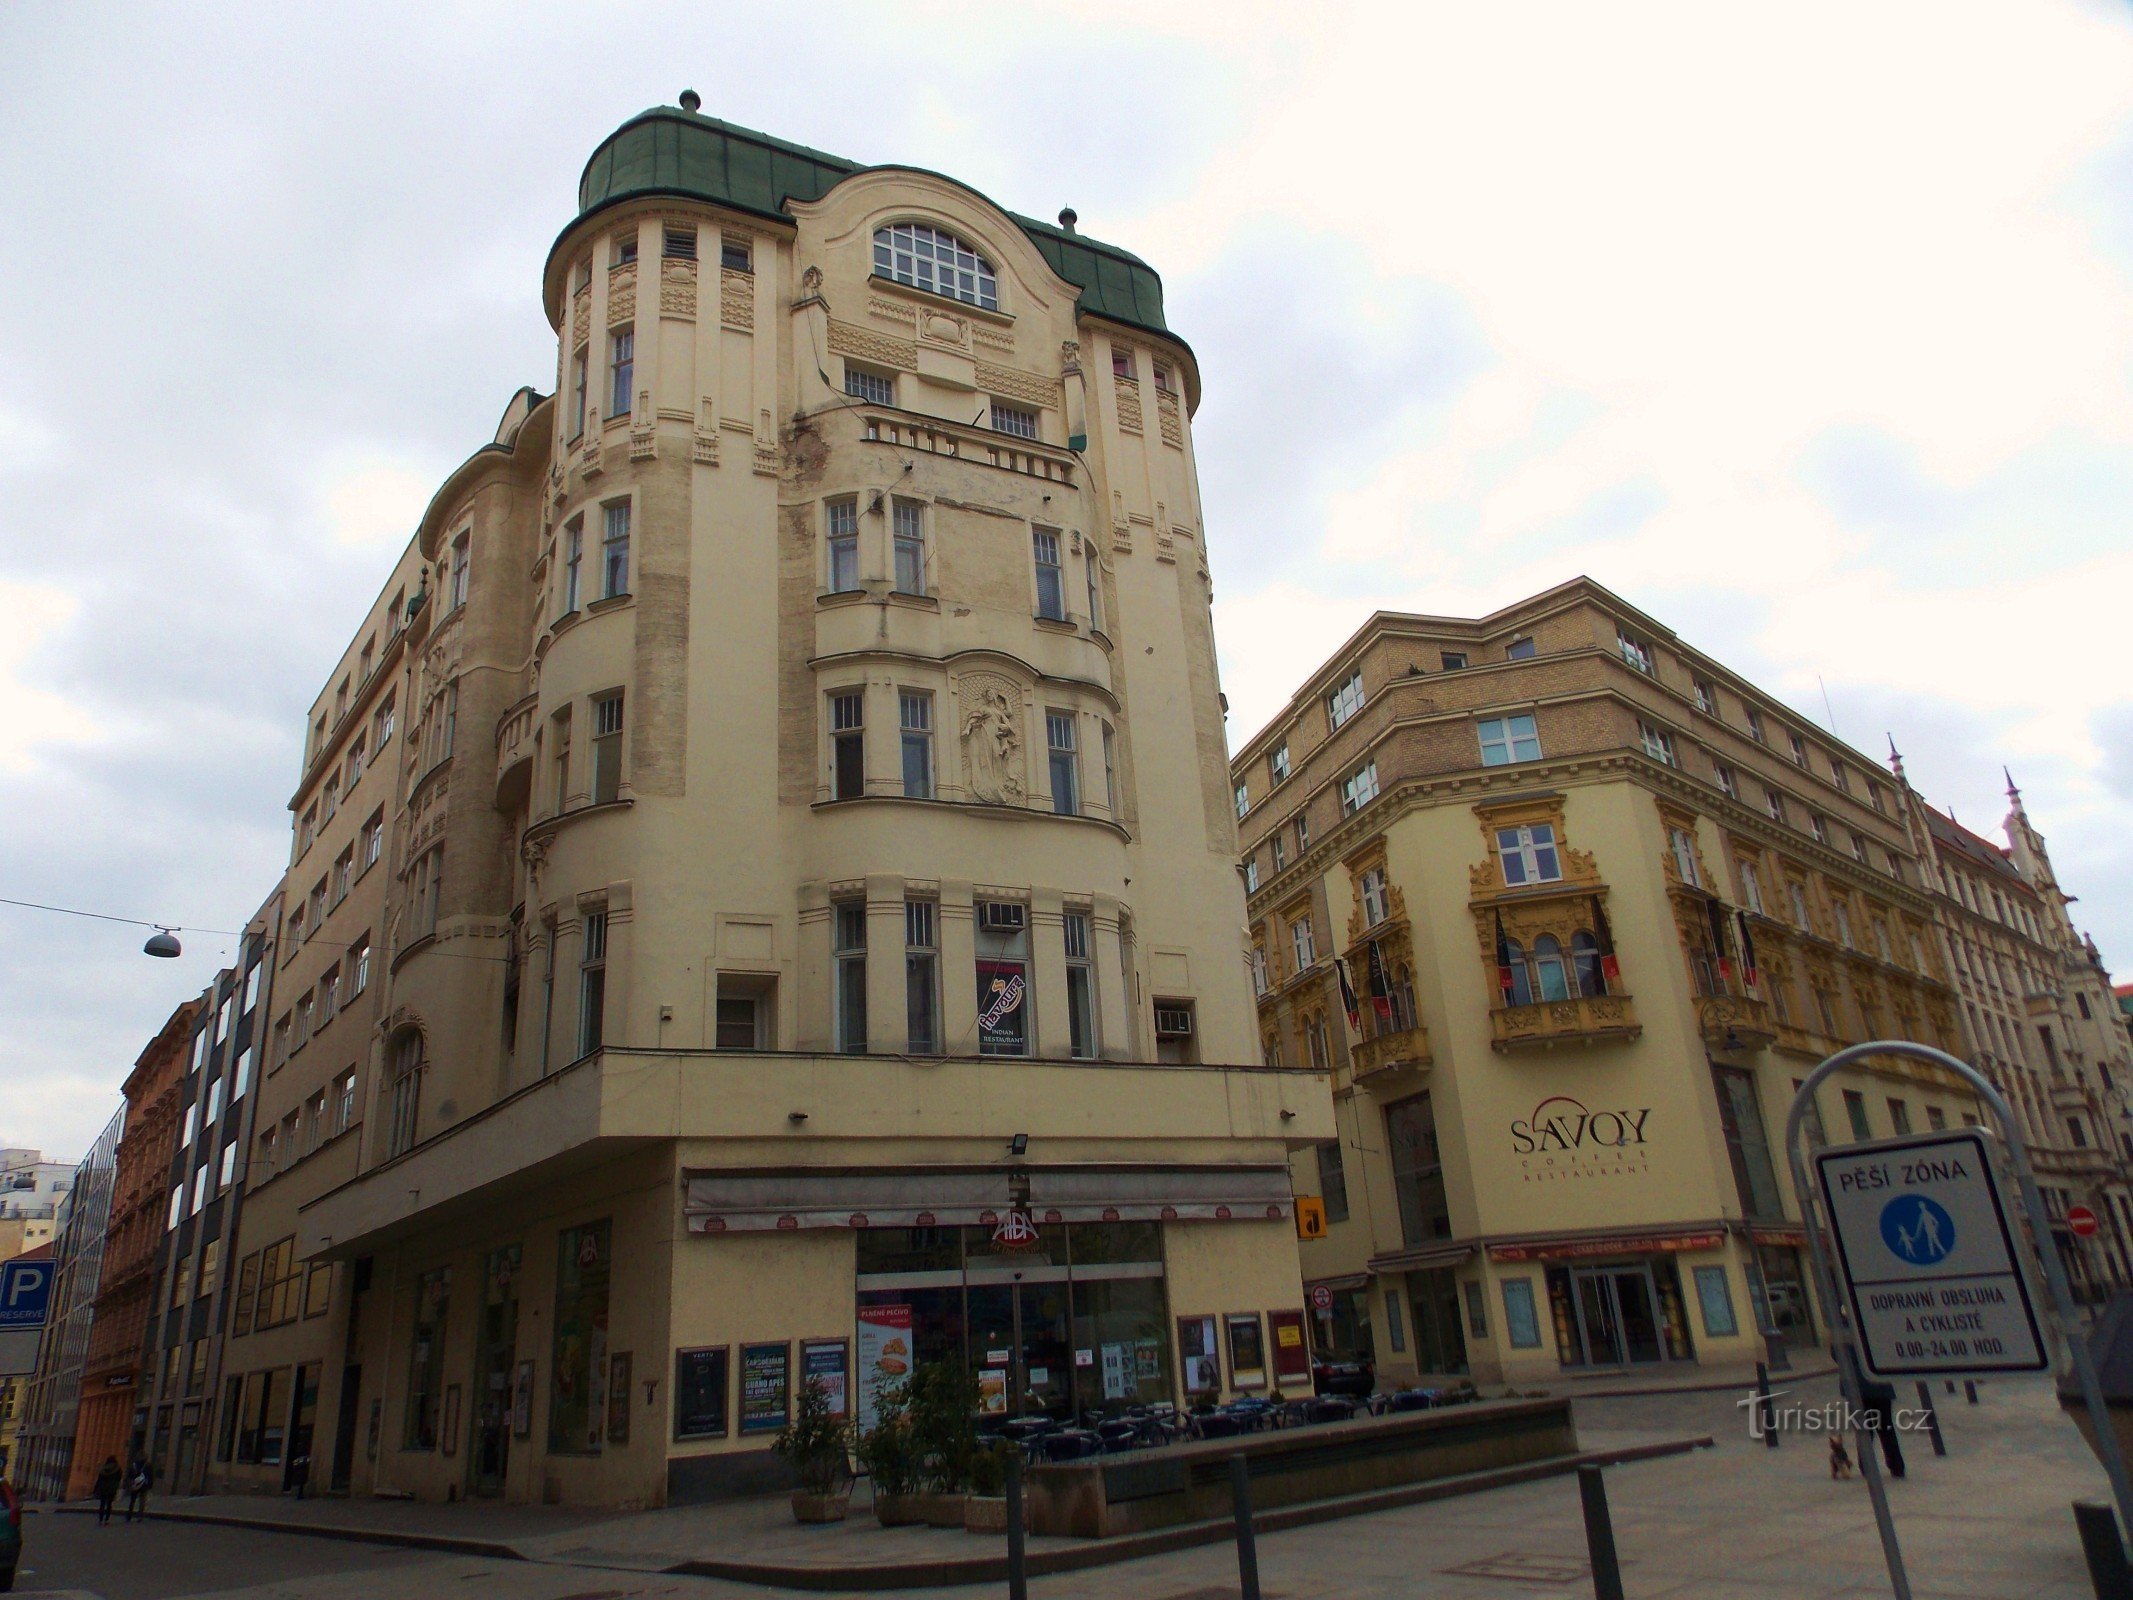 Across Jakubské náměstí in Brno